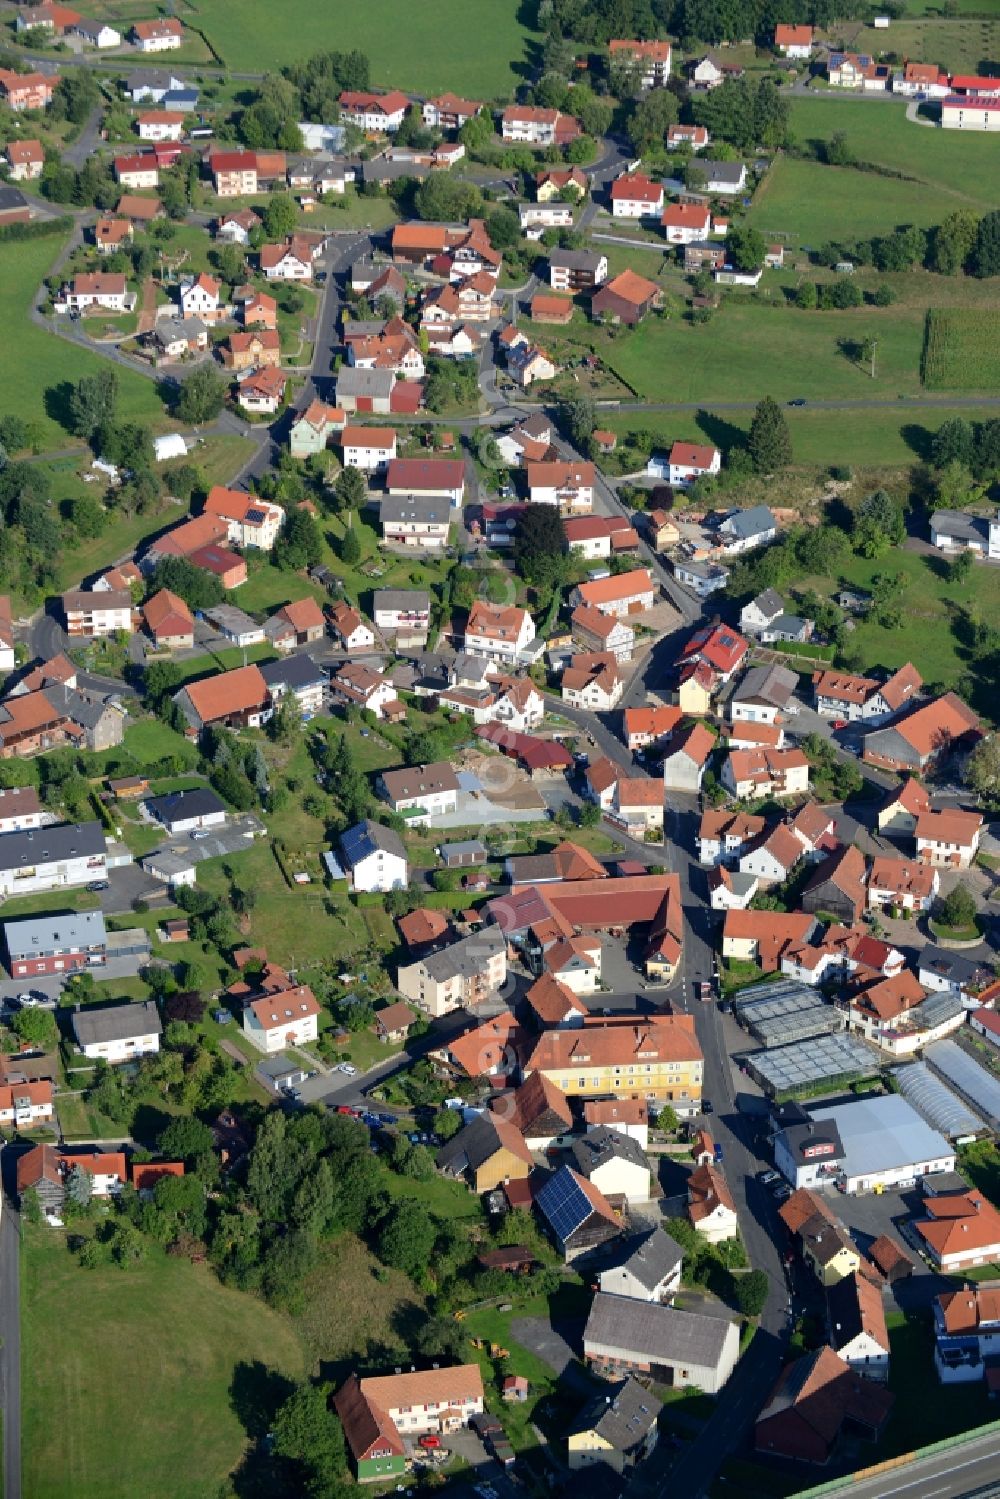 Aerial photograph Uttrichshausen - Village core in Uttrichshausen in the state Hesse